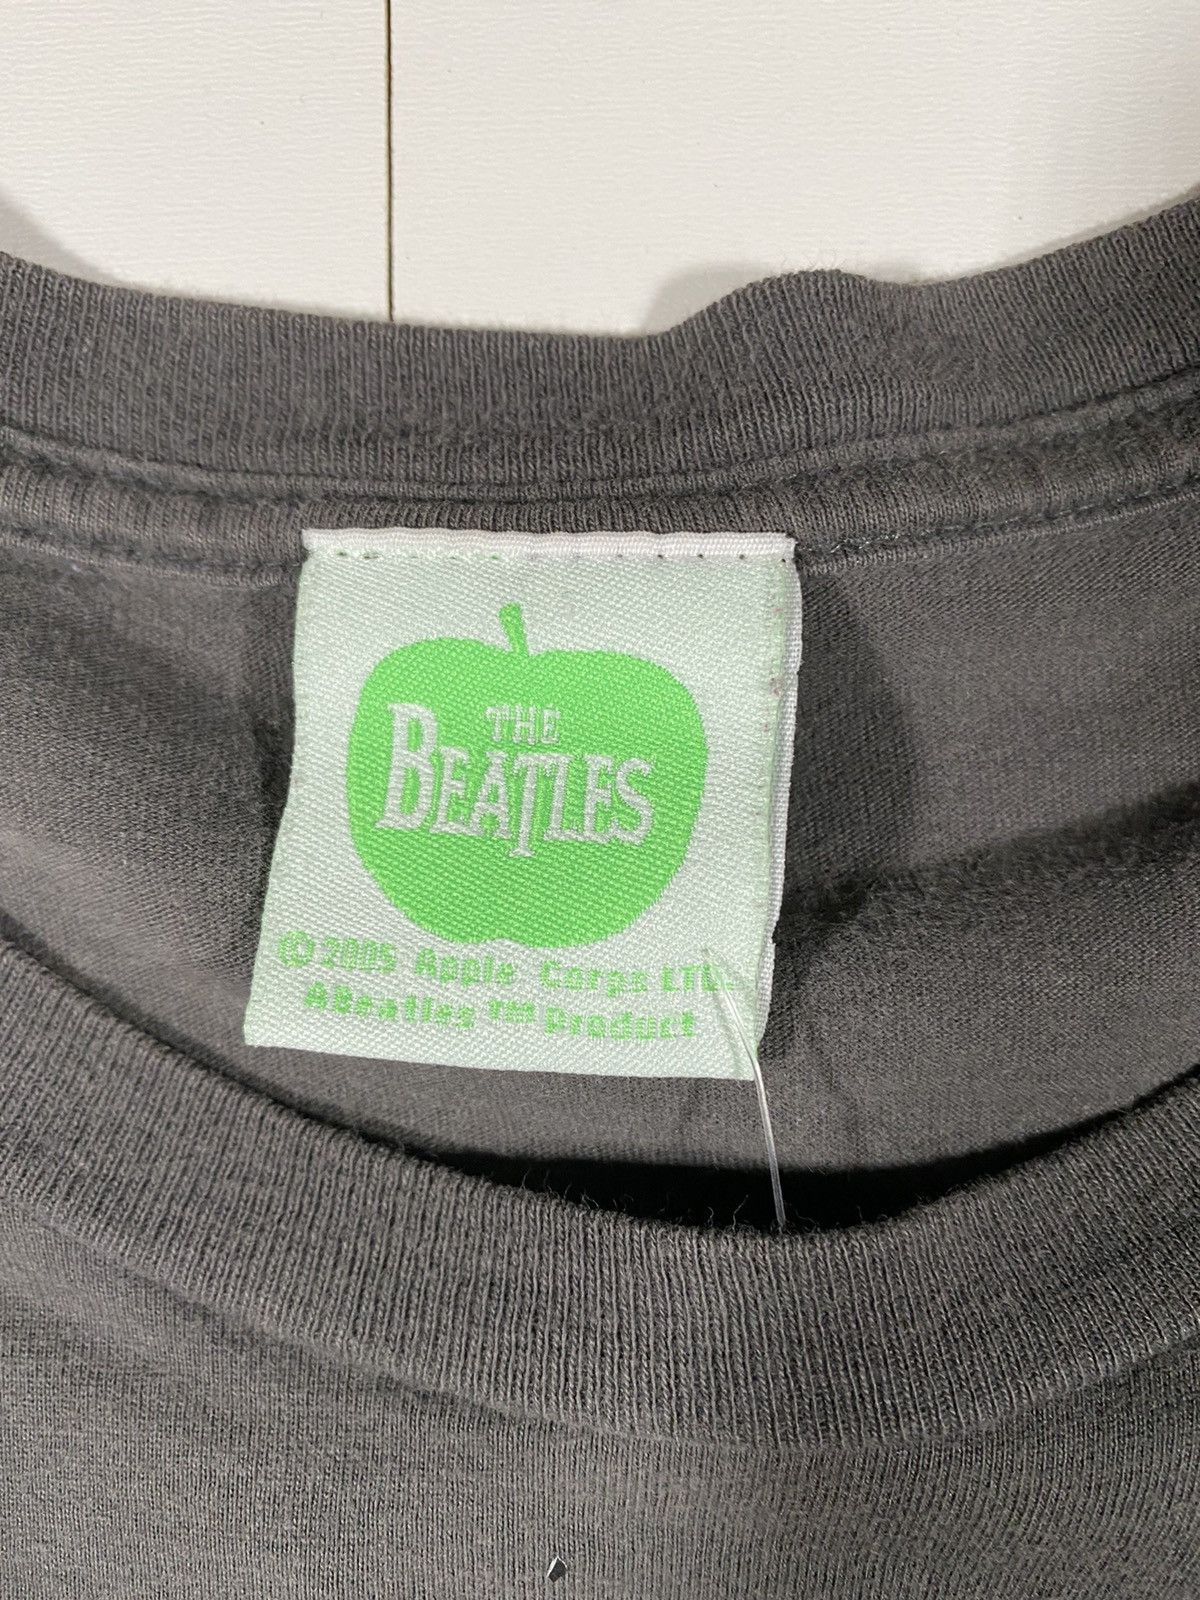 Apple The Beatles ‘05 ‘Let It Be’ Tee Size US XL / EU 56 / 4 - 3 Thumbnail